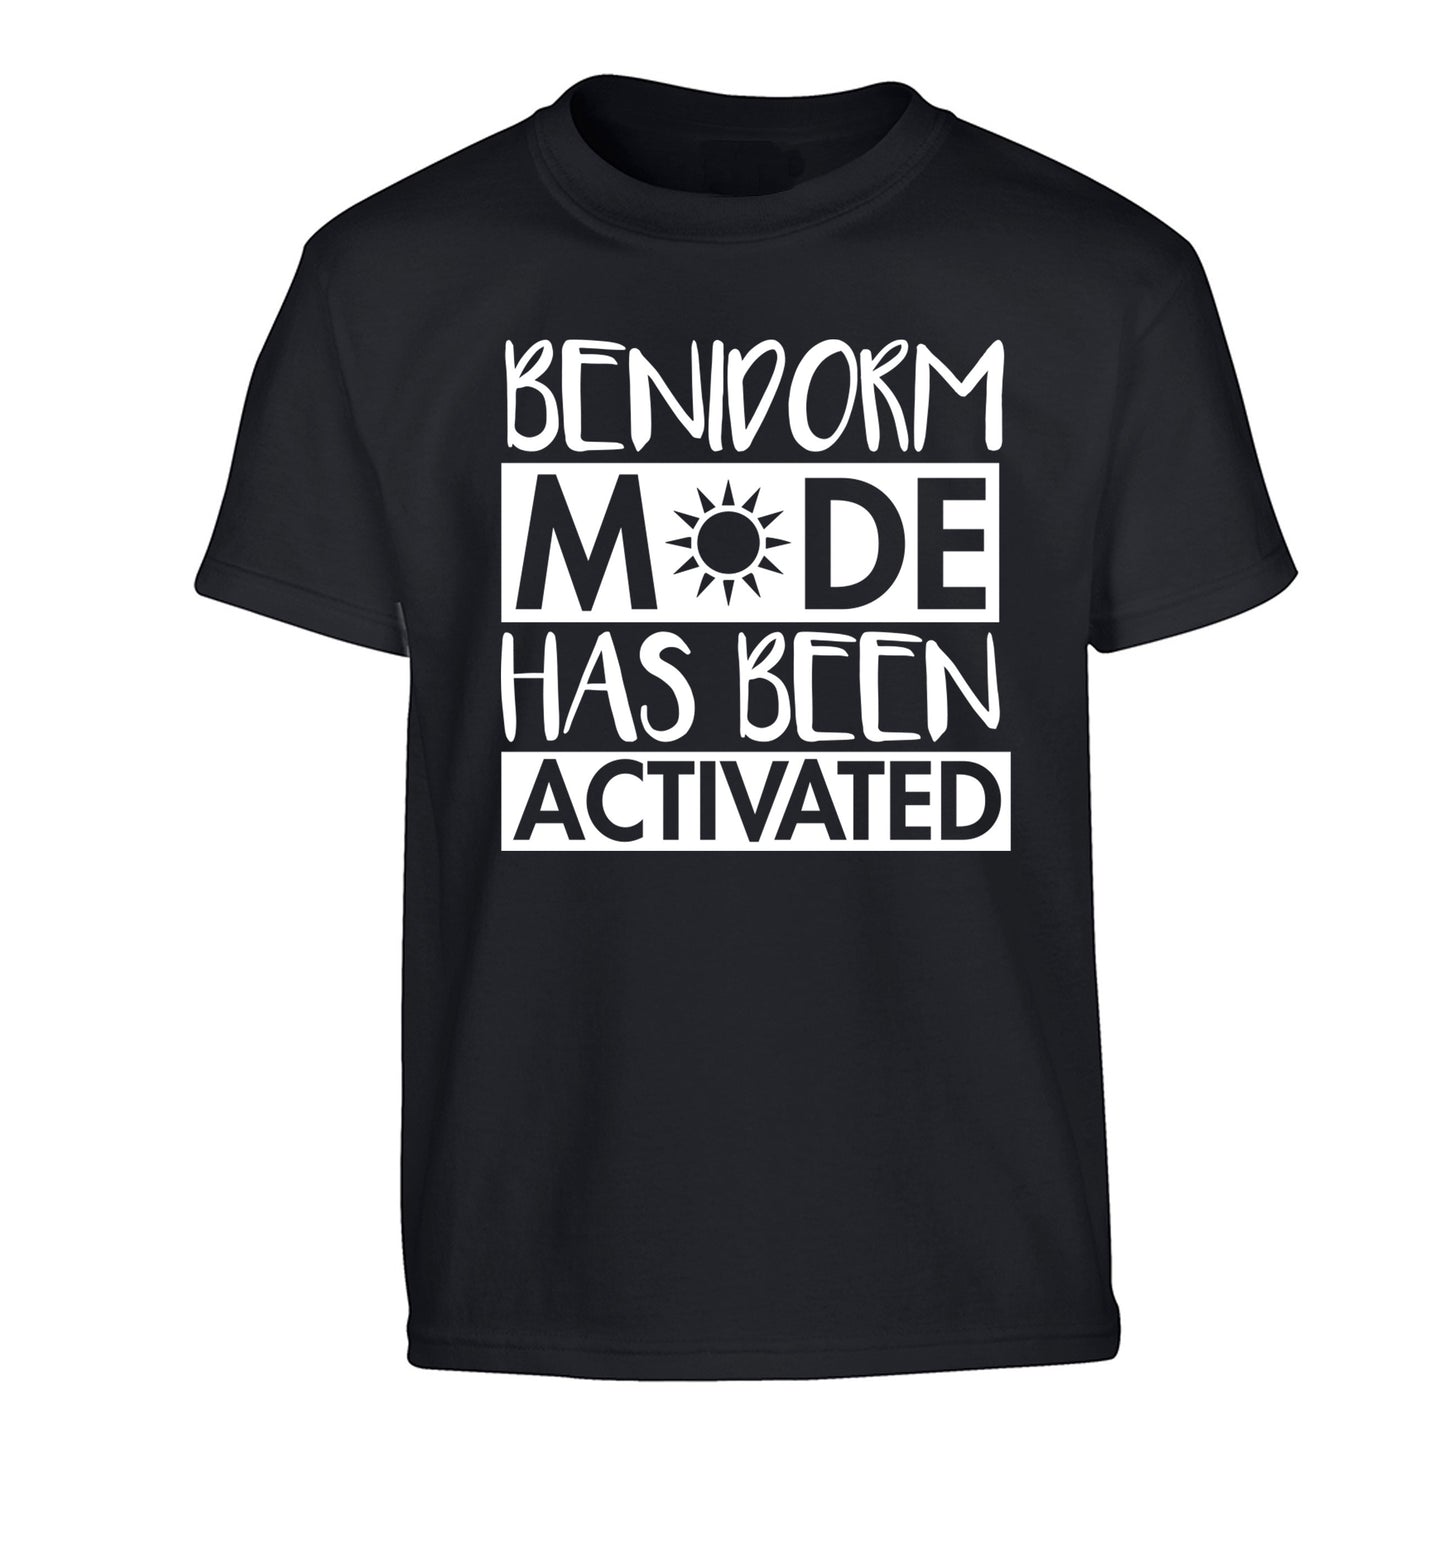 Benidorm mode has been activated Children's black Tshirt 12-14 Years